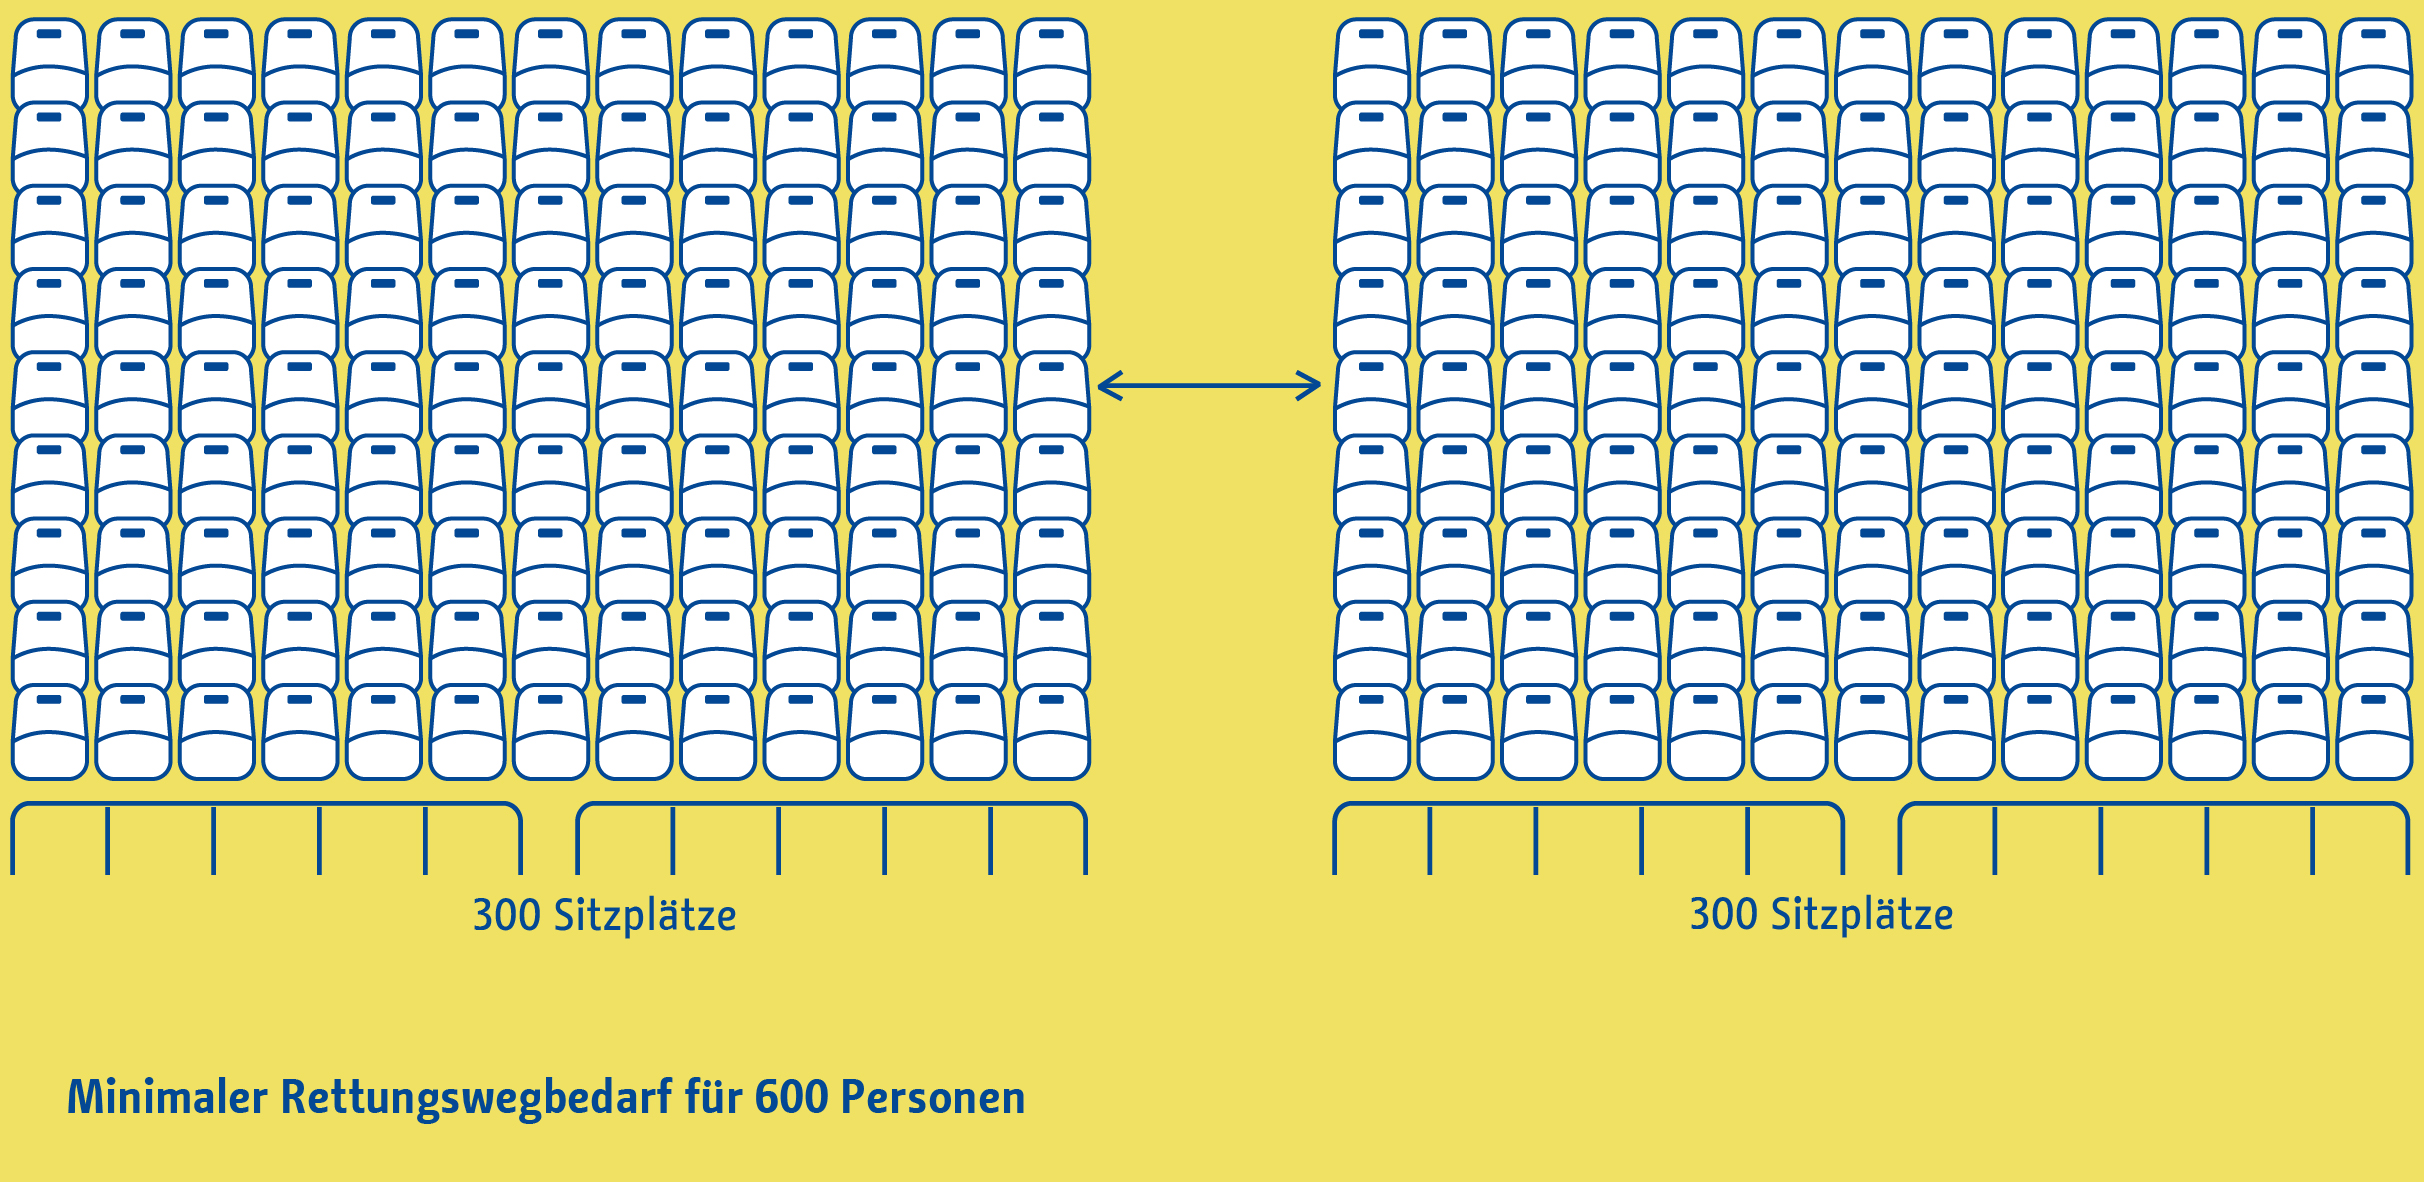 Die Abbildung zeigt schematisch die mangelnde Anzahl und unzureichende Breite von Fluchtwegen im bestehenden Stadion.